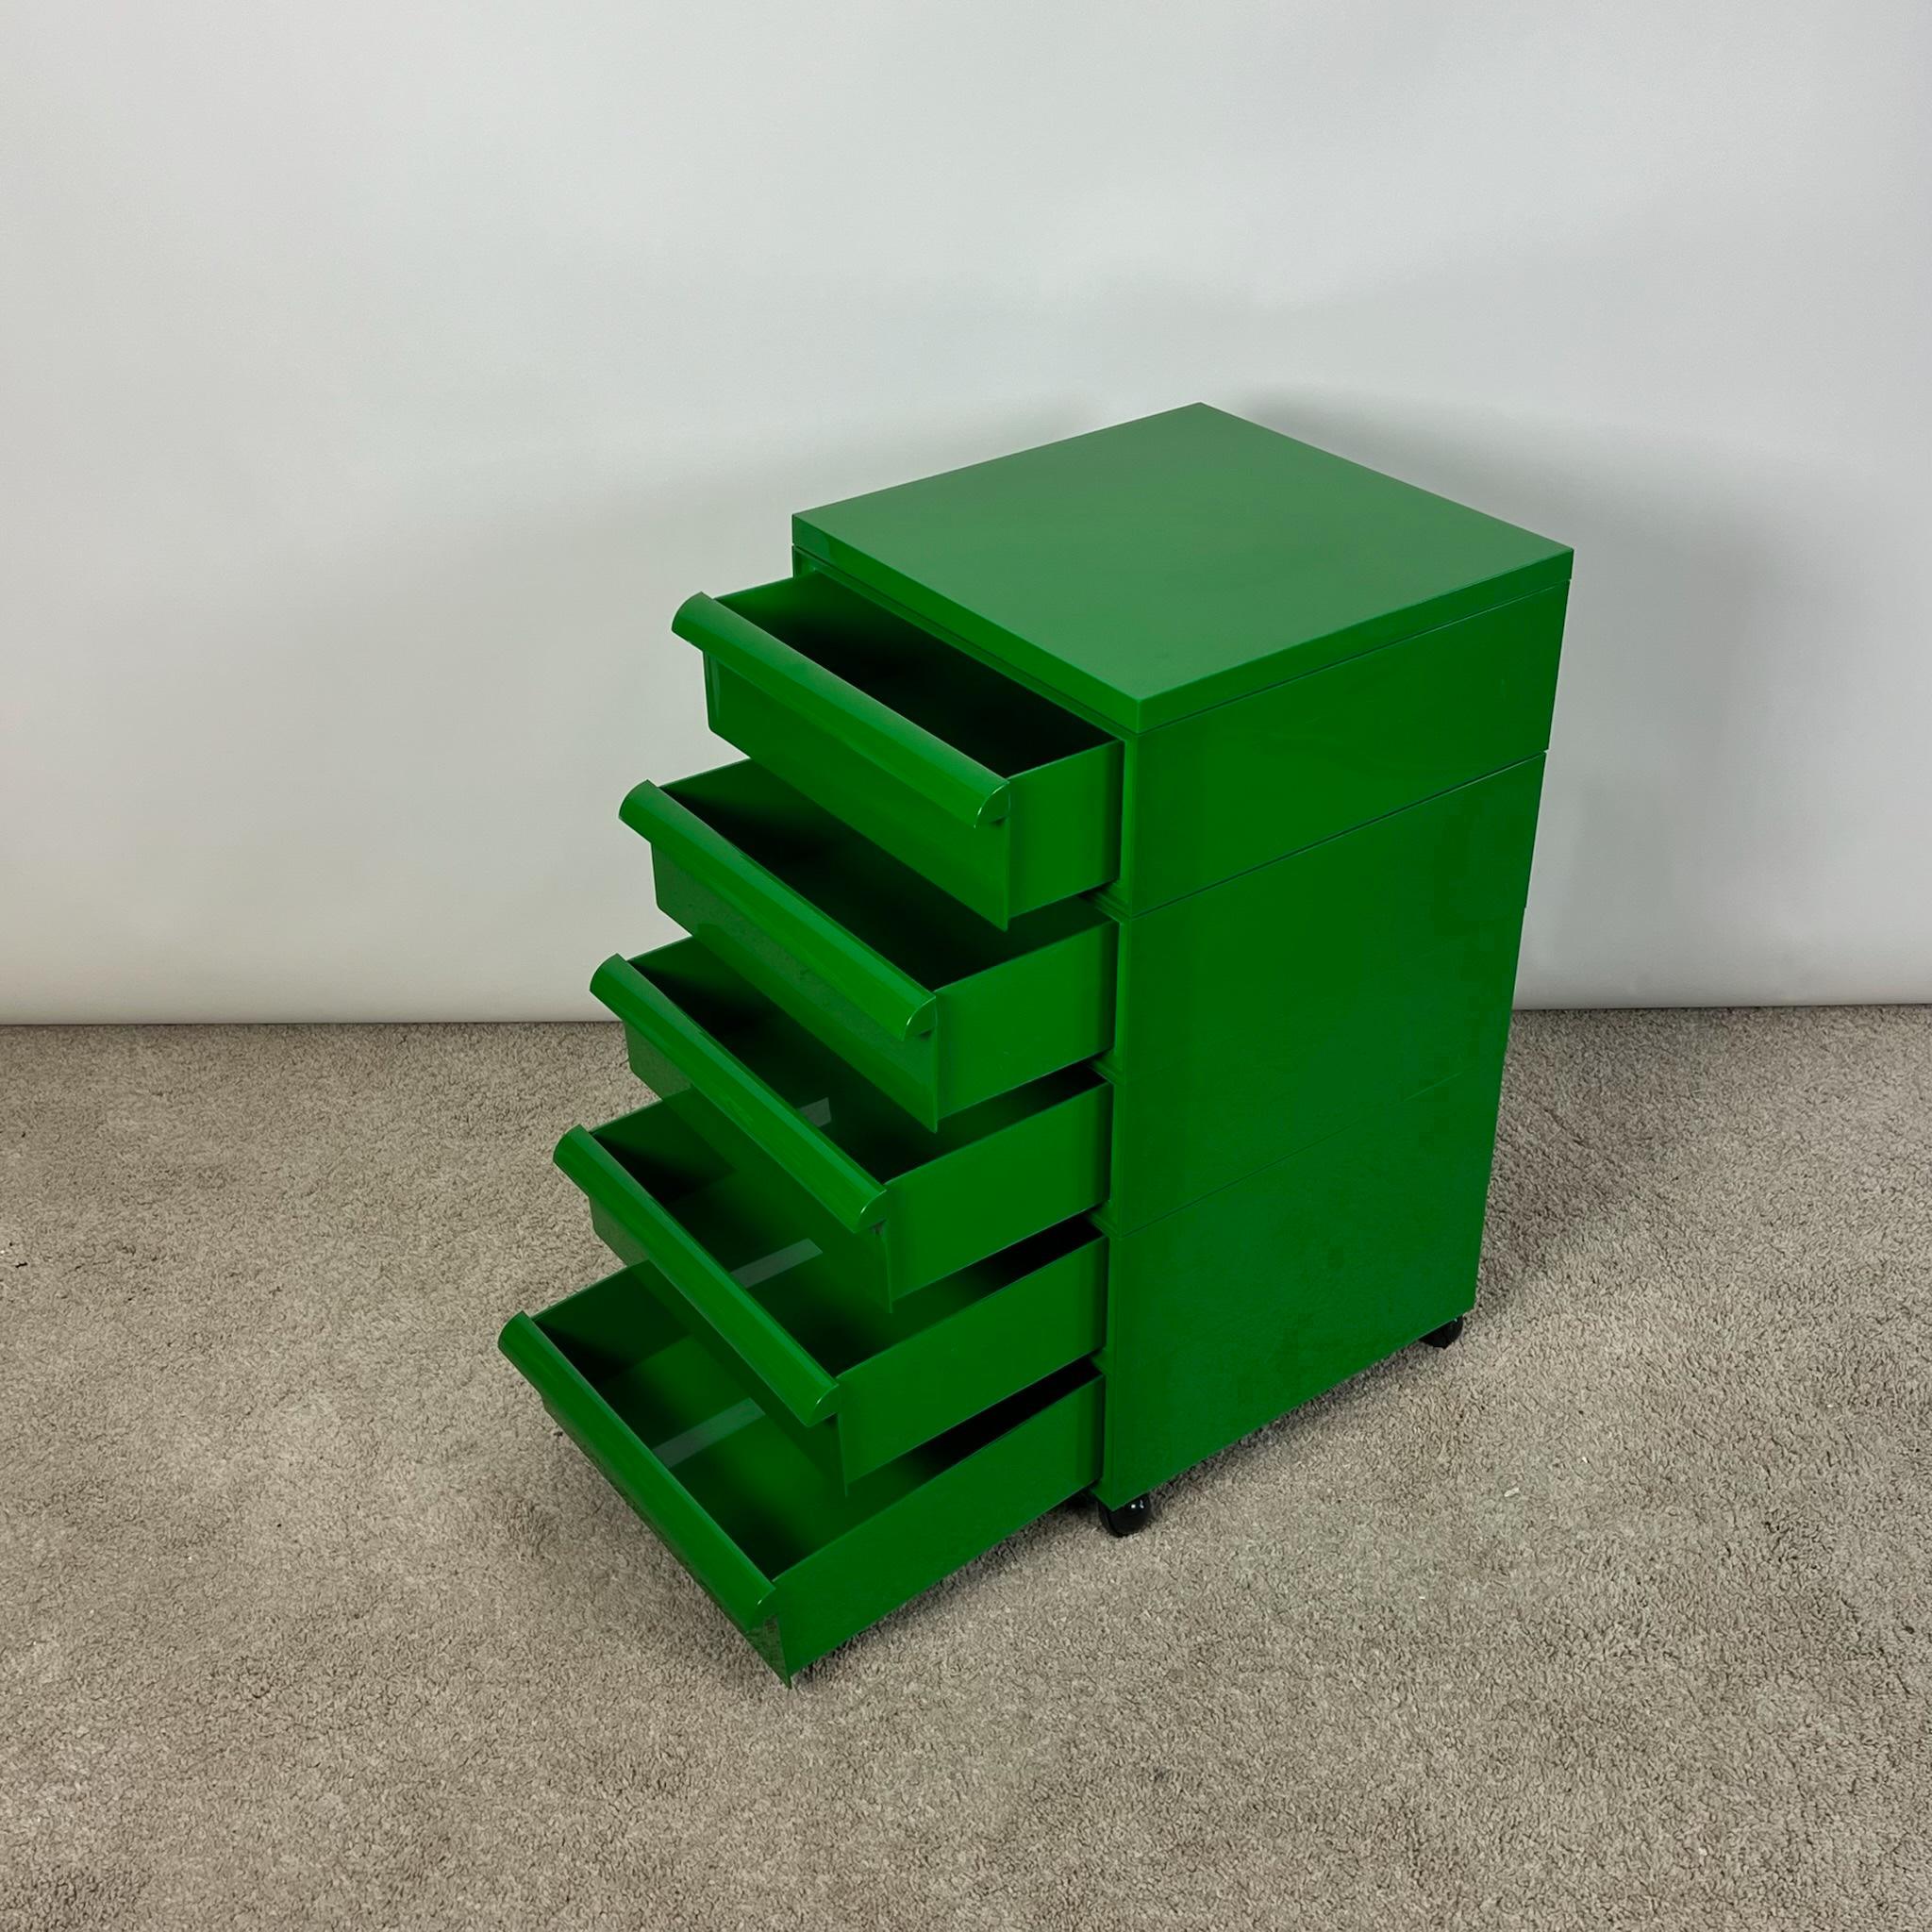 Belle et rare commode en plastique vert conçue par Simon Fussell et produite par Kartell. 

Cette commode modulable en plastique vert sur roulettes présente un design simple mais ingénieux. Chaque tiroir est une unité unique qui peut être combinée